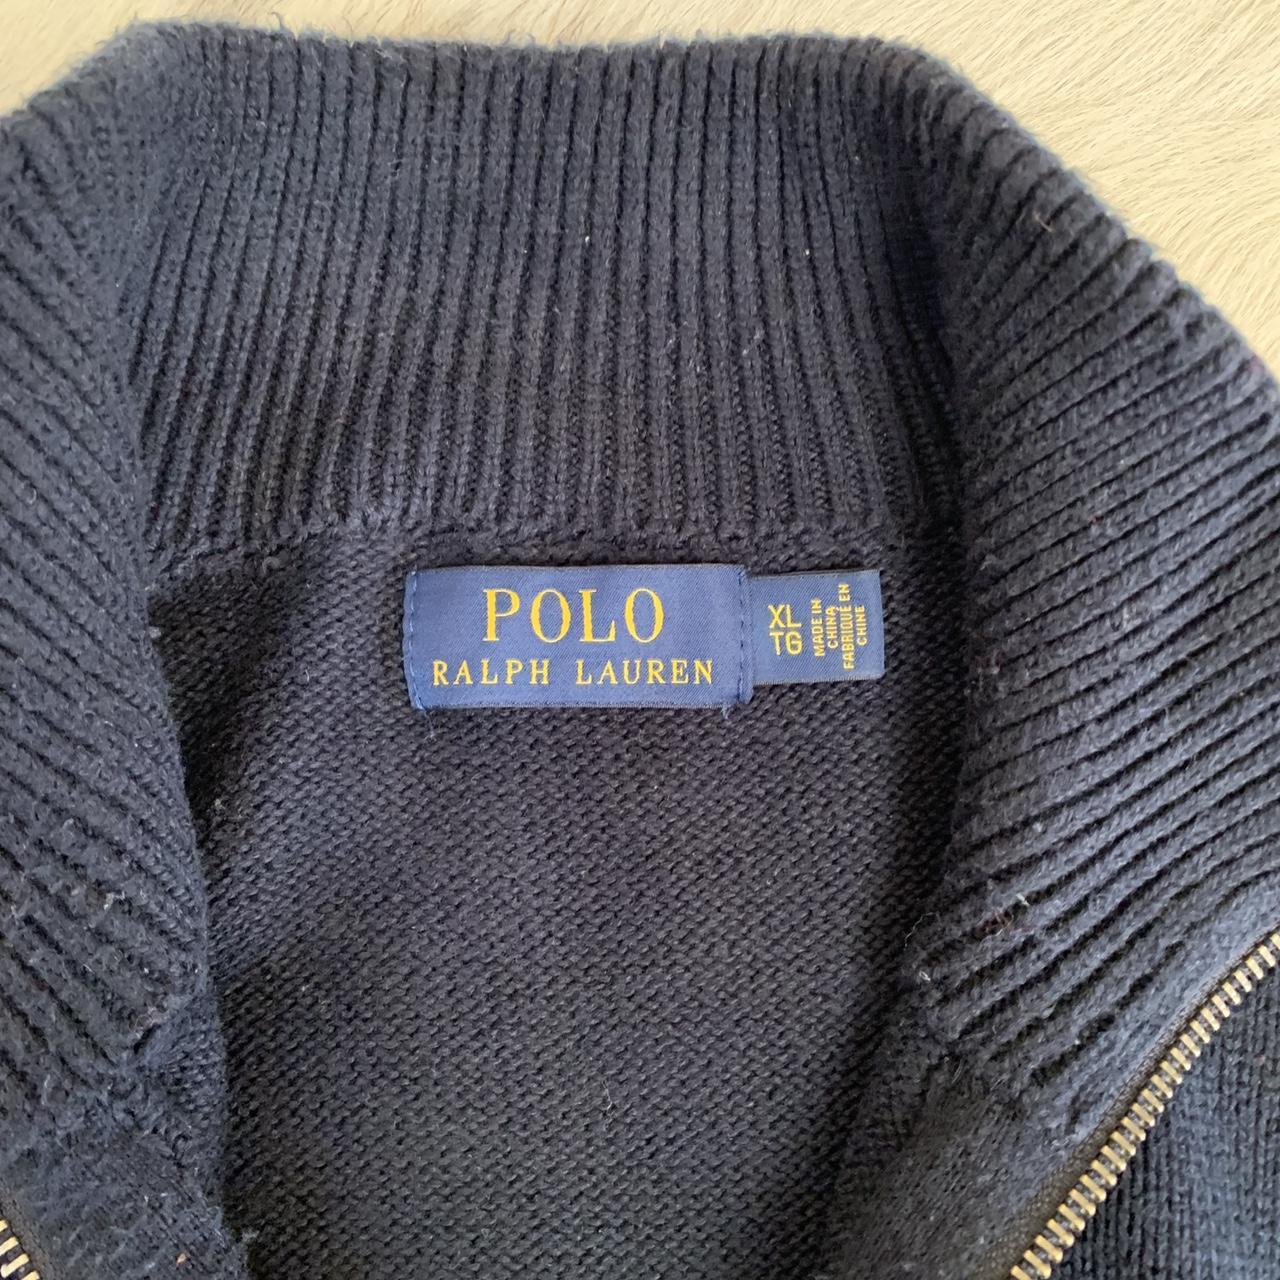 Polo Ralph Lauren navy blue knit quarter 1/4 zip... - Depop